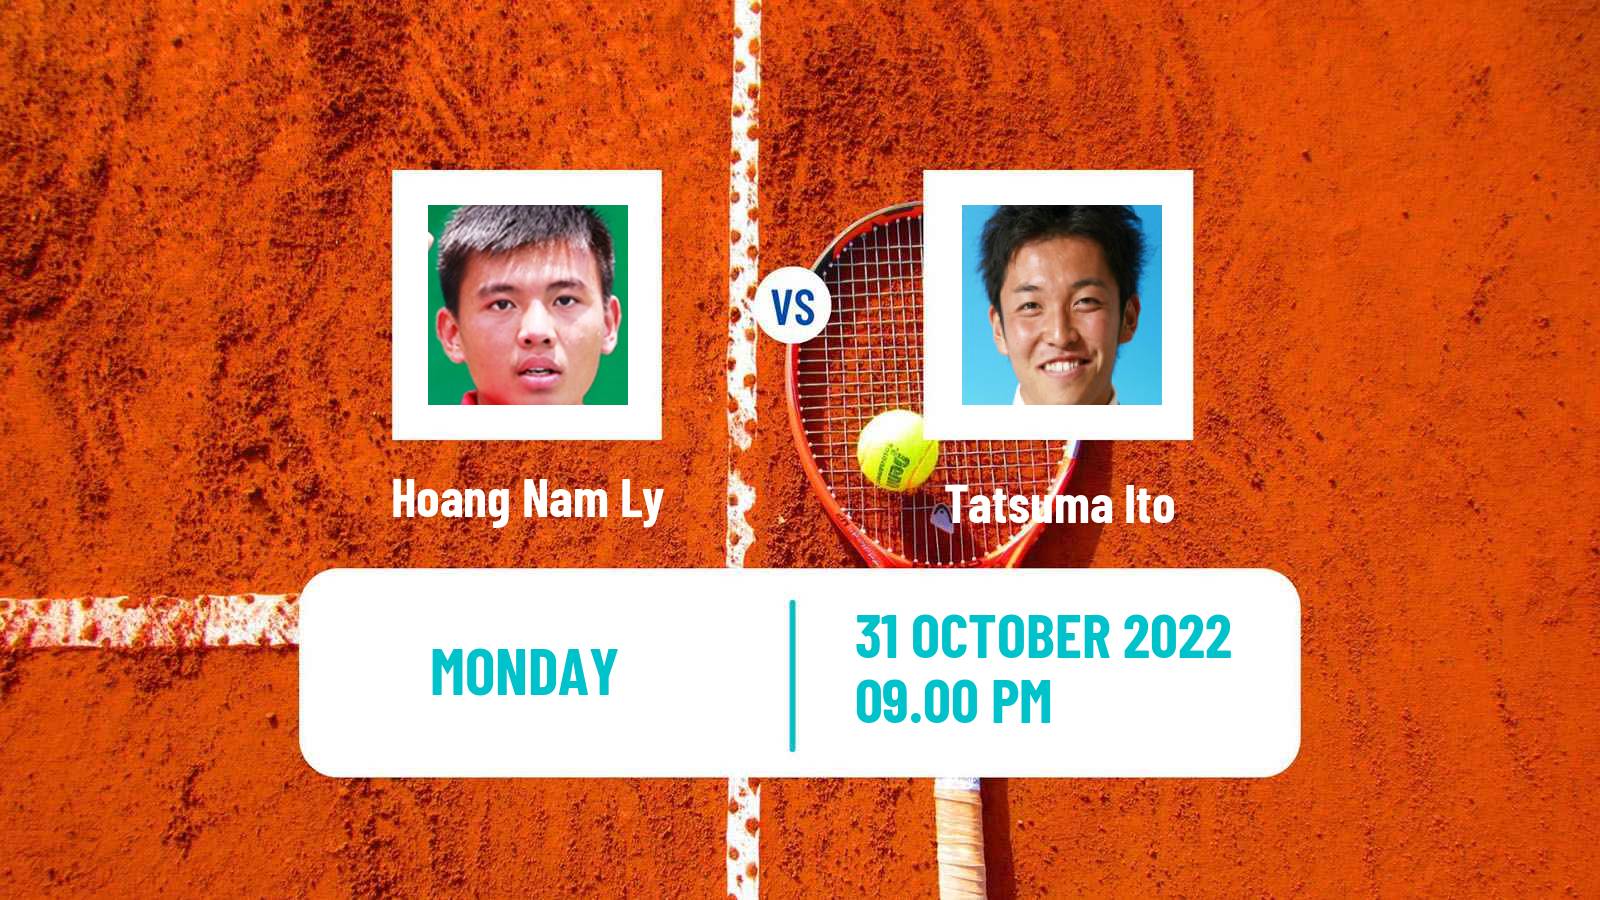 Tennis ATP Challenger Hoang Nam Ly - Tatsuma Ito